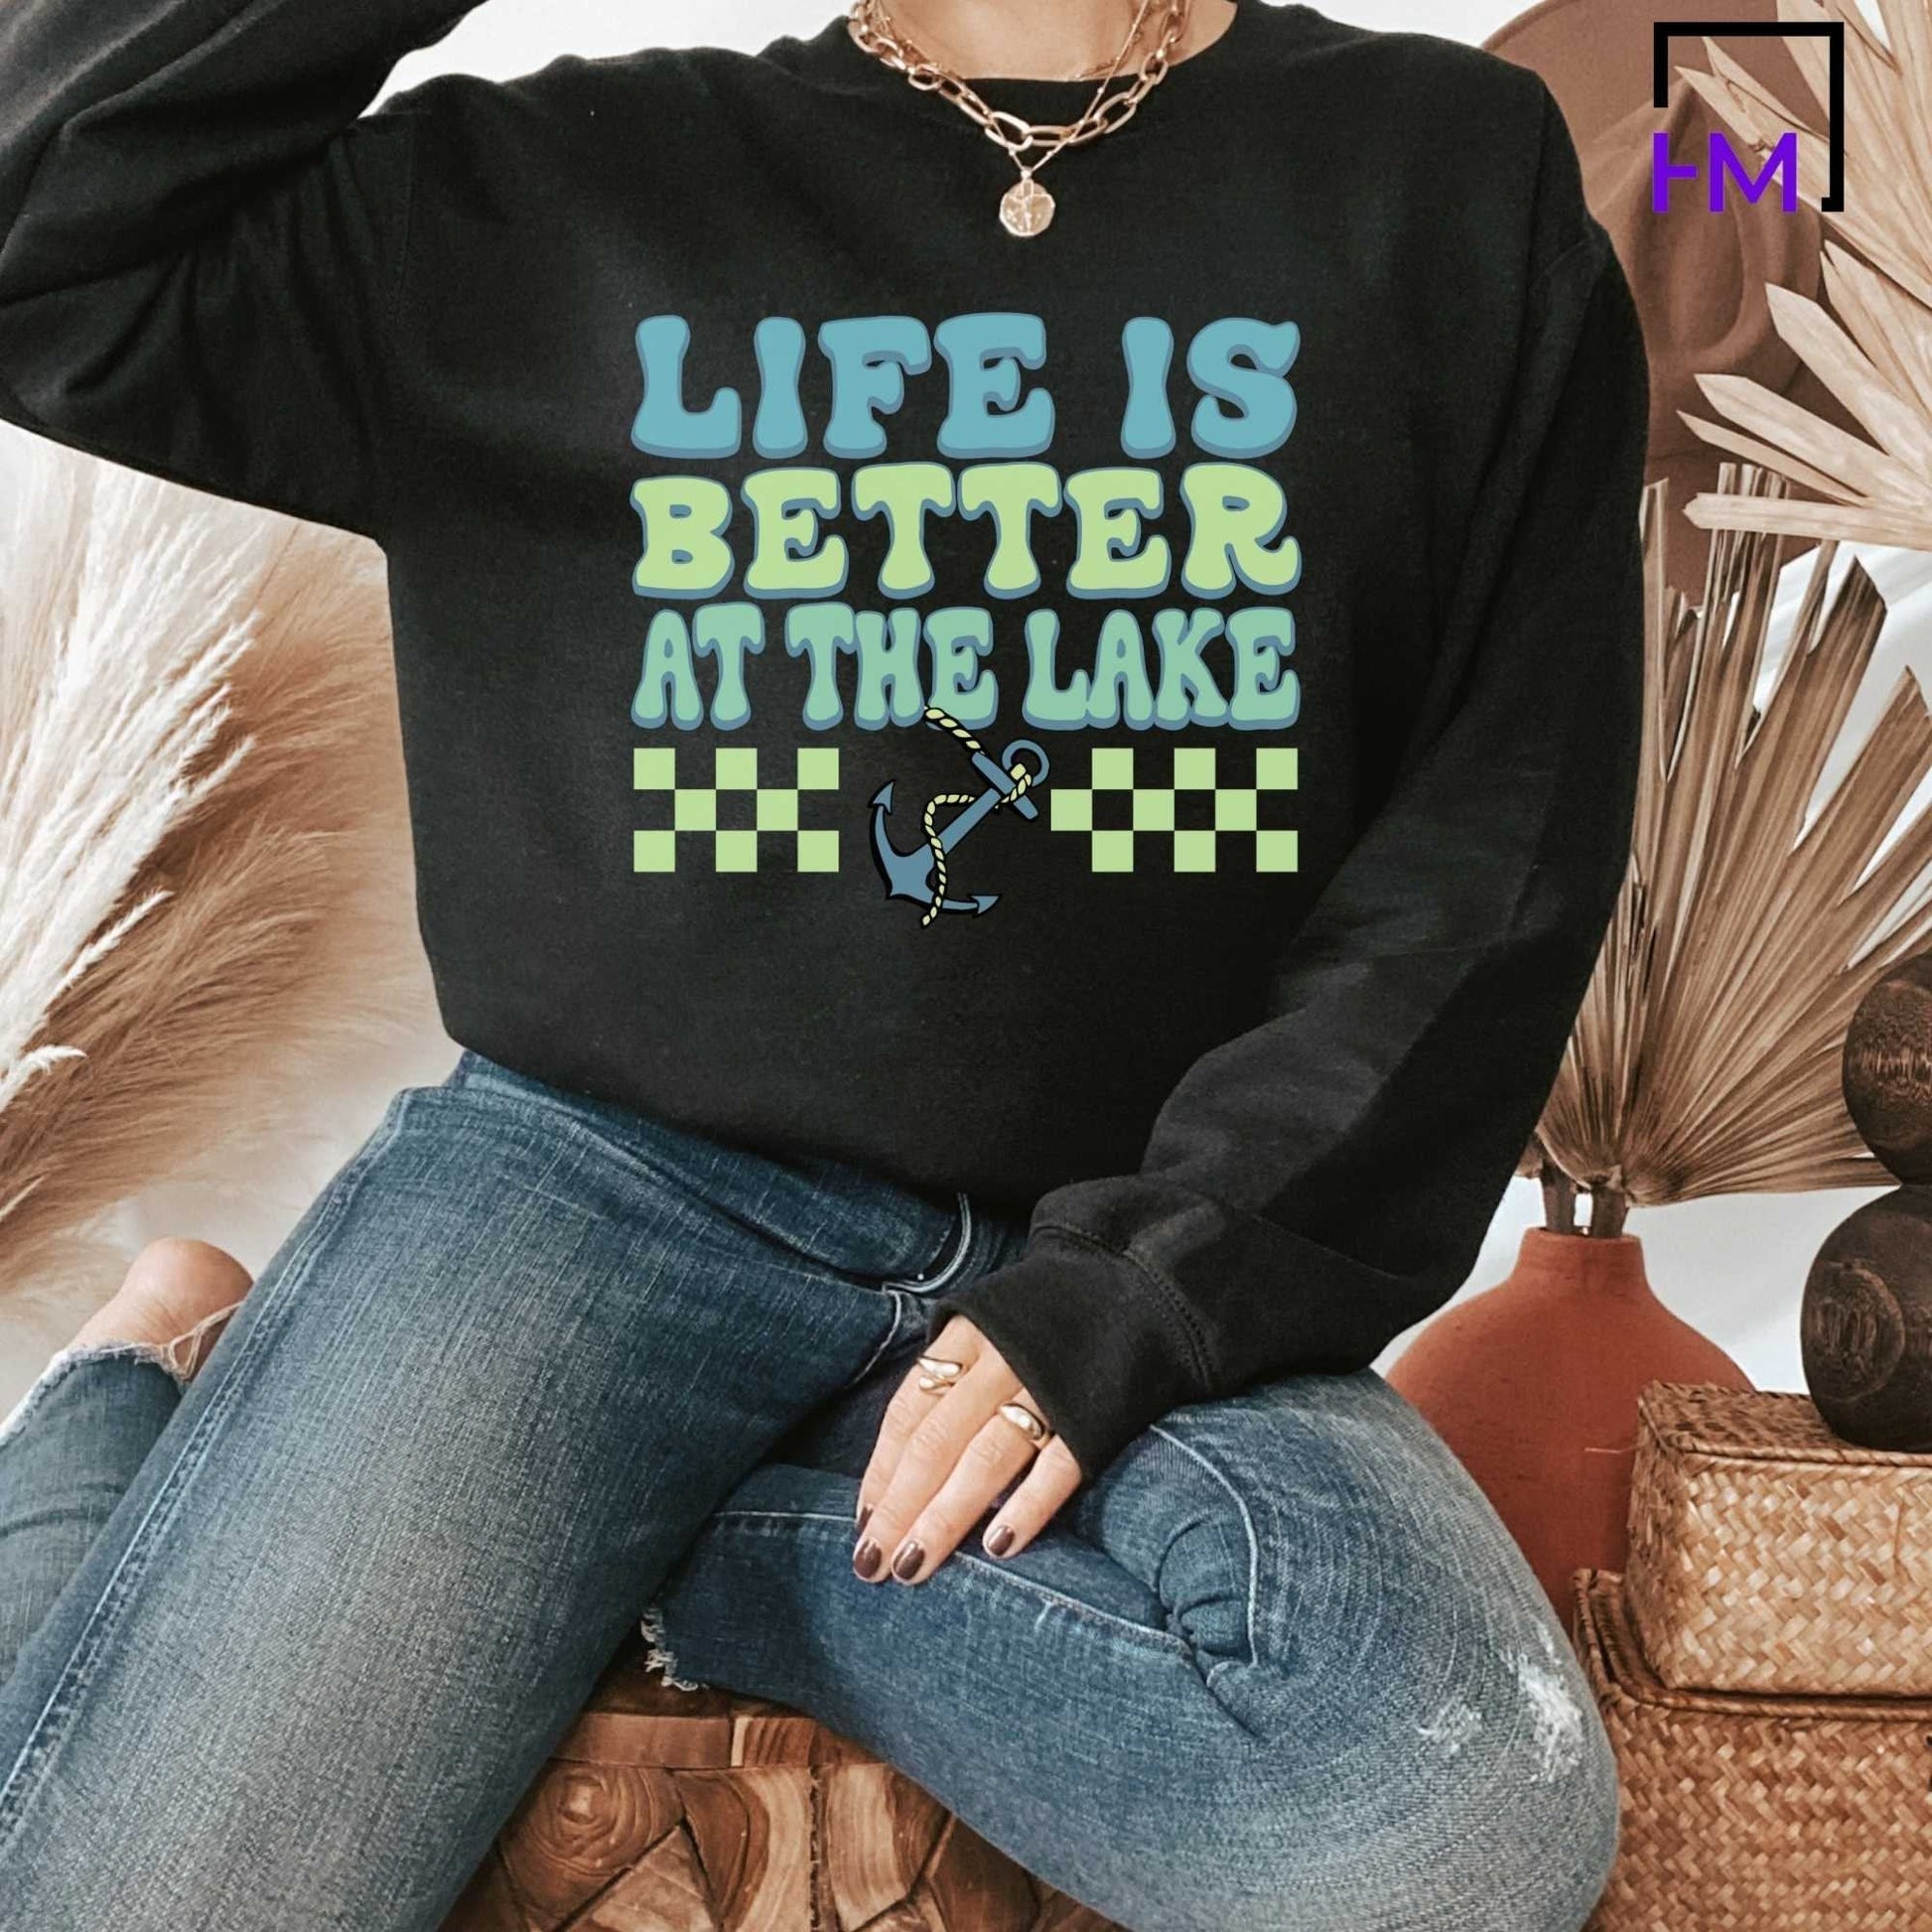 Lake Life Shirt, Lake Trip Shirts for Girls, Gift for Lake Lovers, Girls Trip Shirts, Summer Shirt for Women, Boating Shirt, Kayaking Shirt